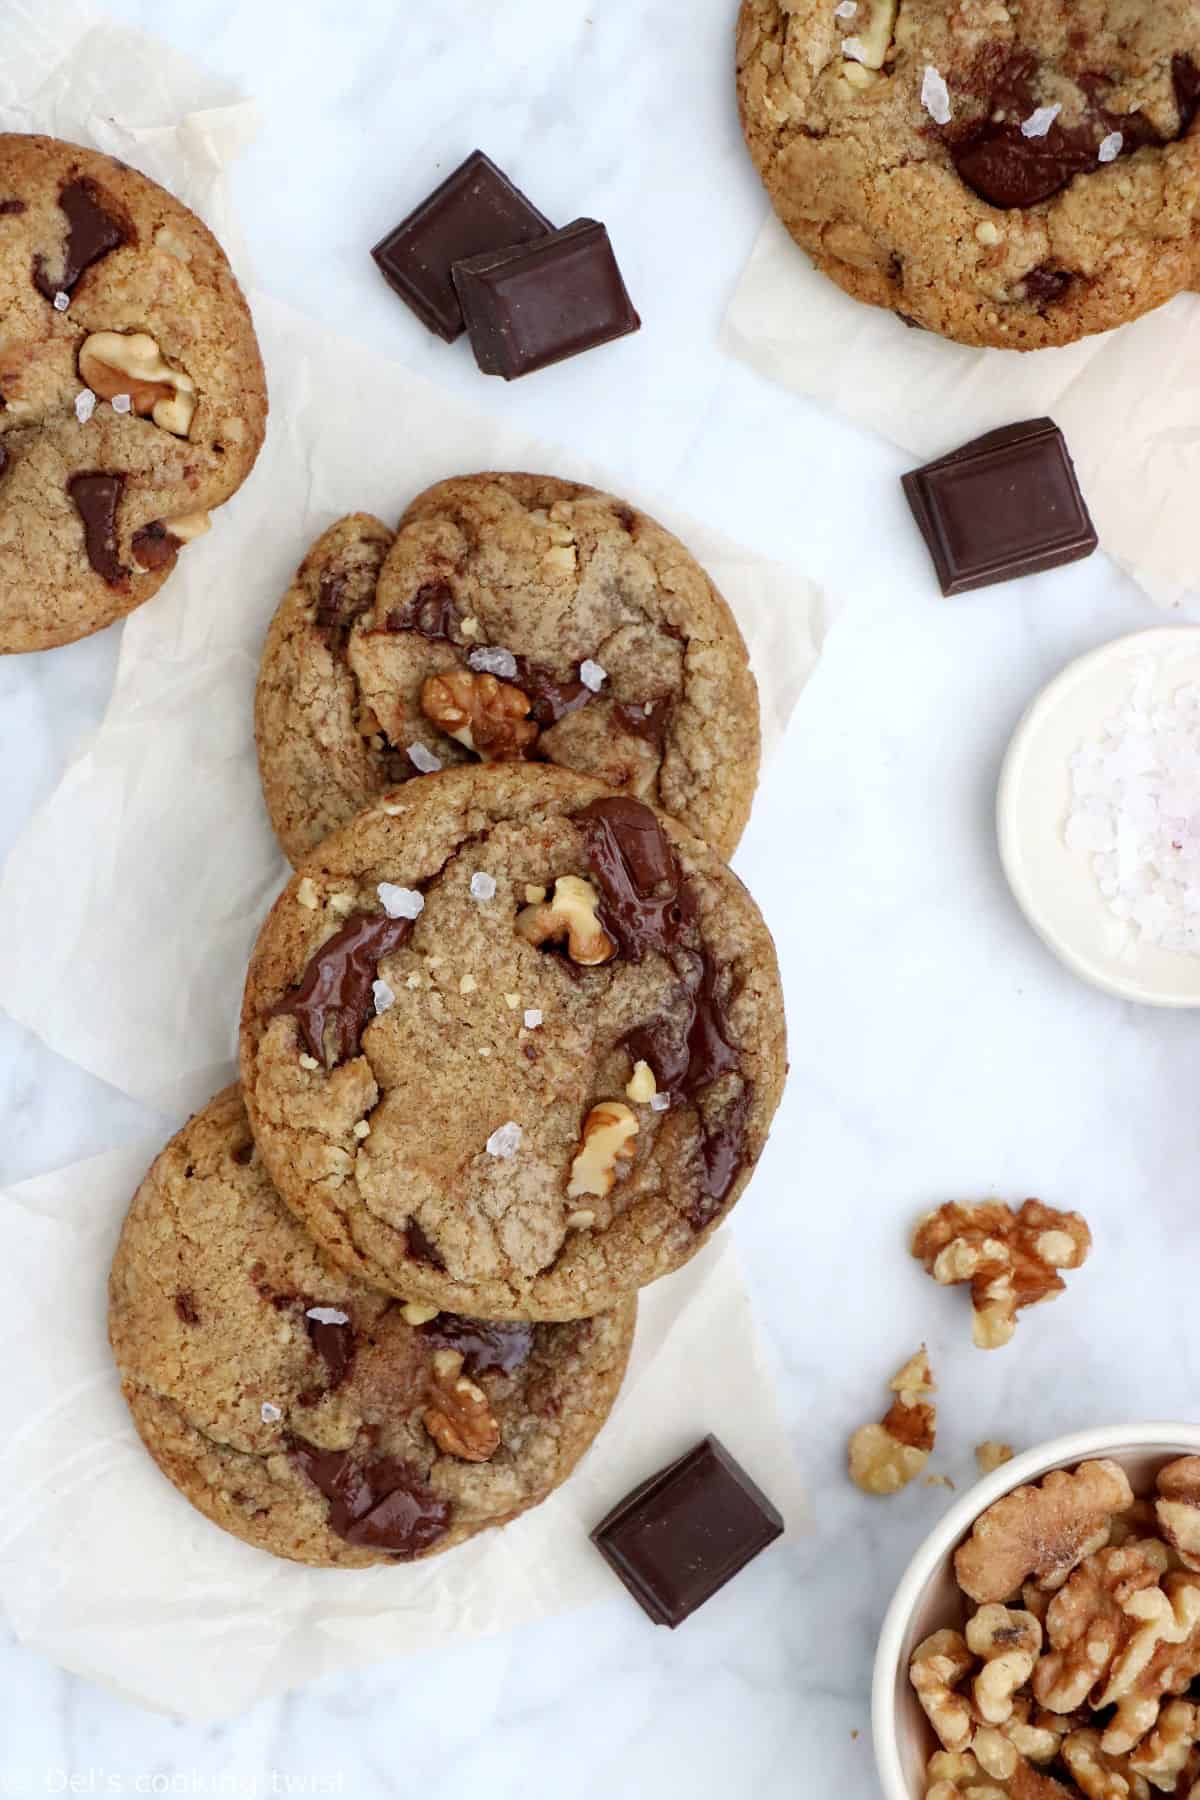 Croquants et légèrement croustillants en surface, tendres à l'intérieur, ces cookies aux noix, beurre noisette et chocolat sont une petite merveille de gourmandise.